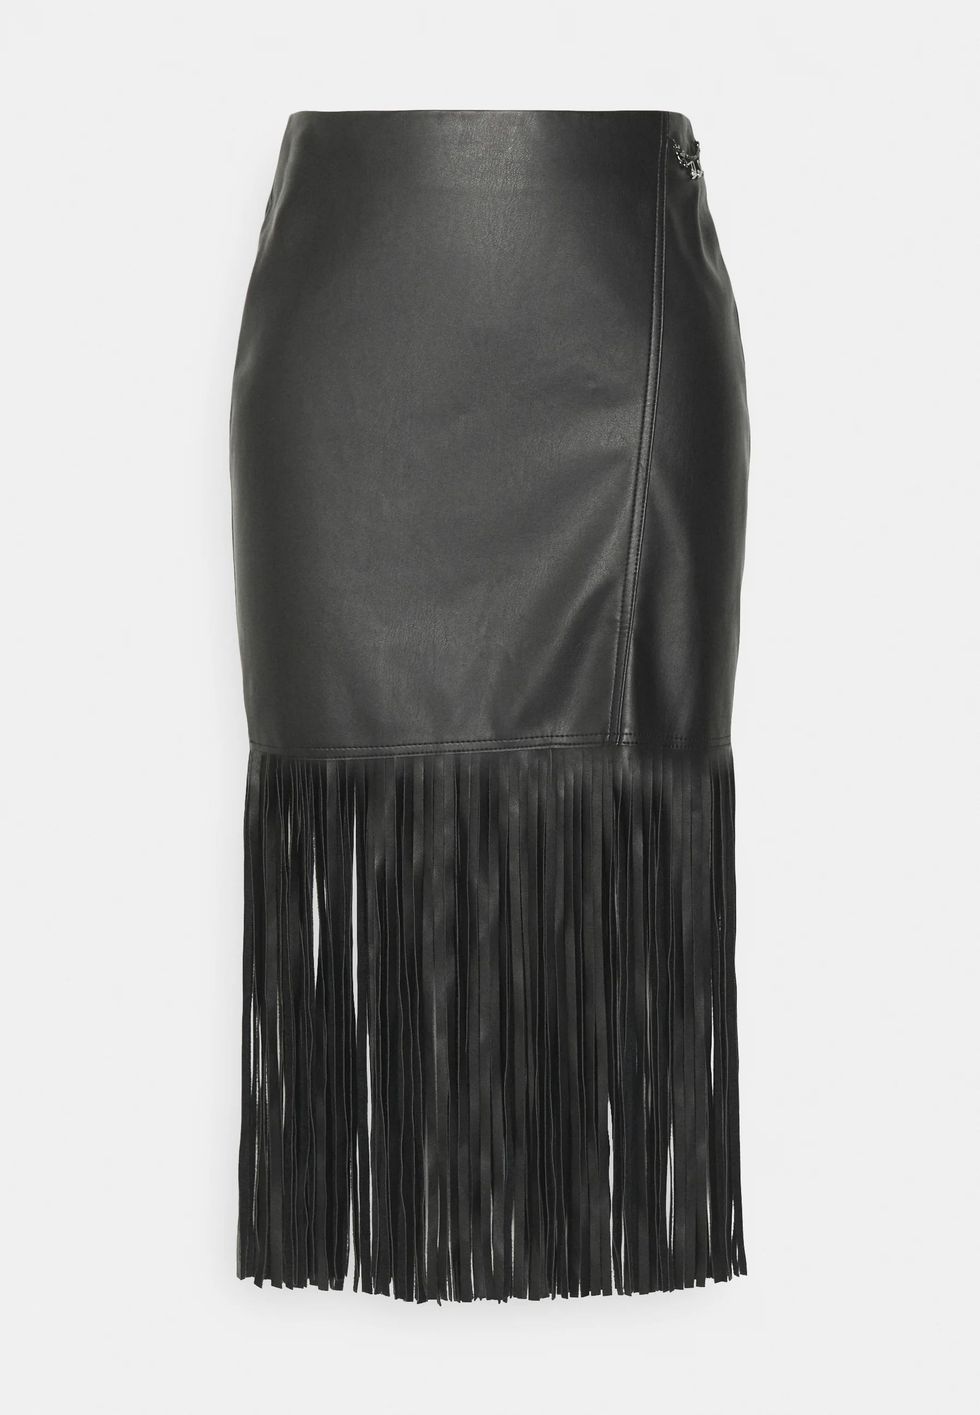 Falda de tubo con flecos, de Karl Lagerfeld